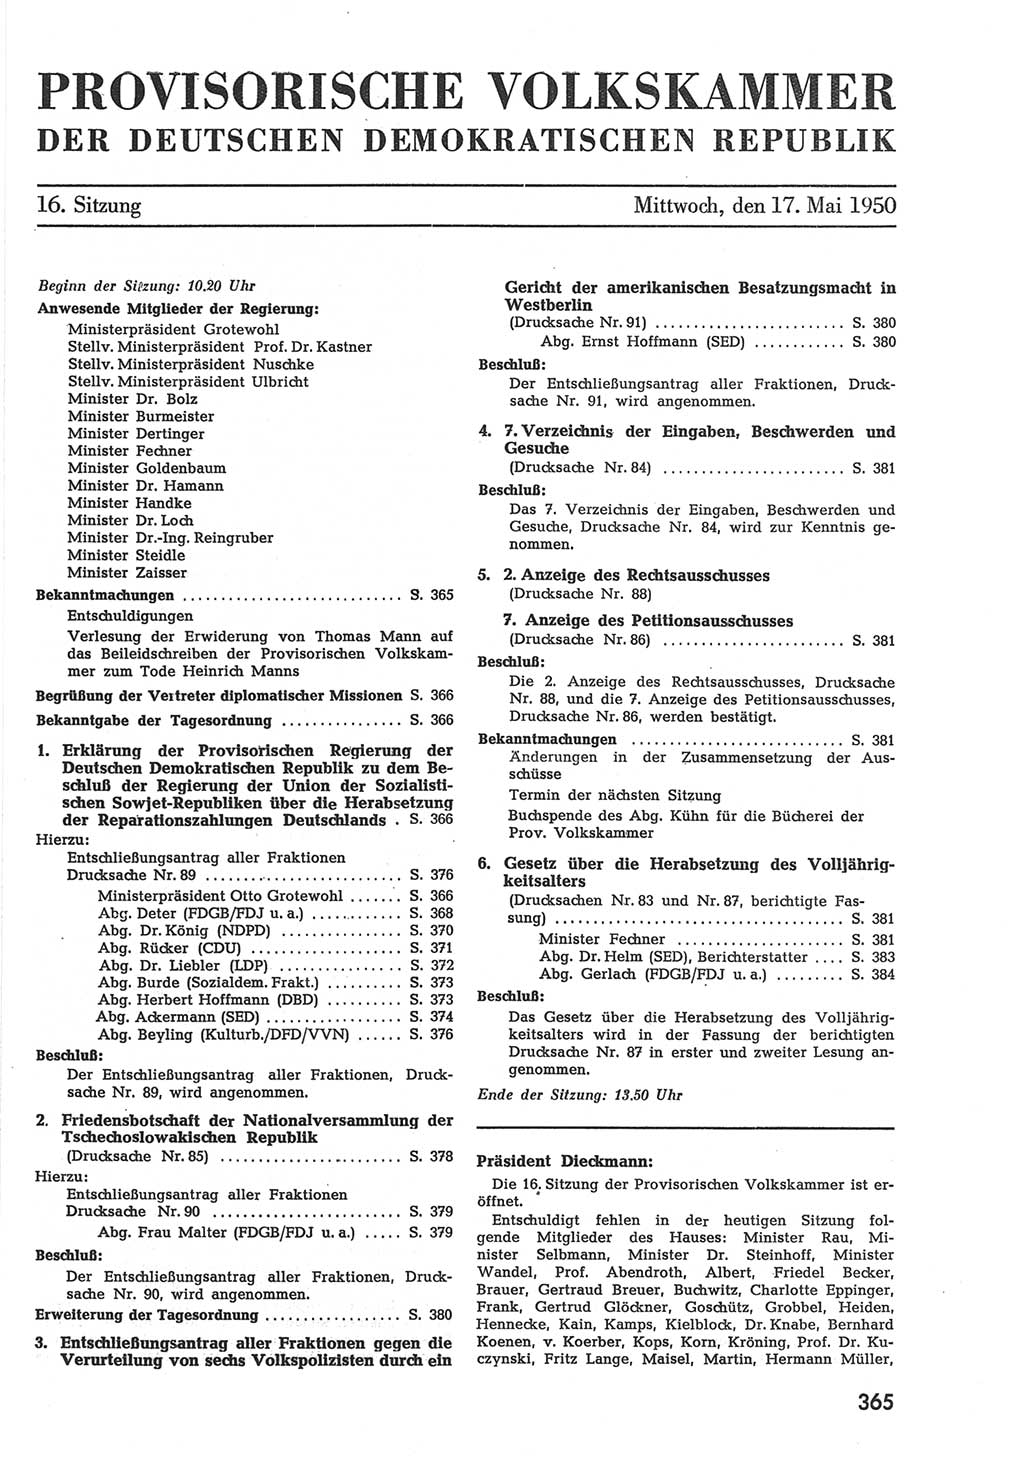 Provisorische Volkskammer (VK) der Deutschen Demokratischen Republik (DDR) 1949-1950, Dokument 383 (Prov. VK DDR 1949-1950, Dok. 383)